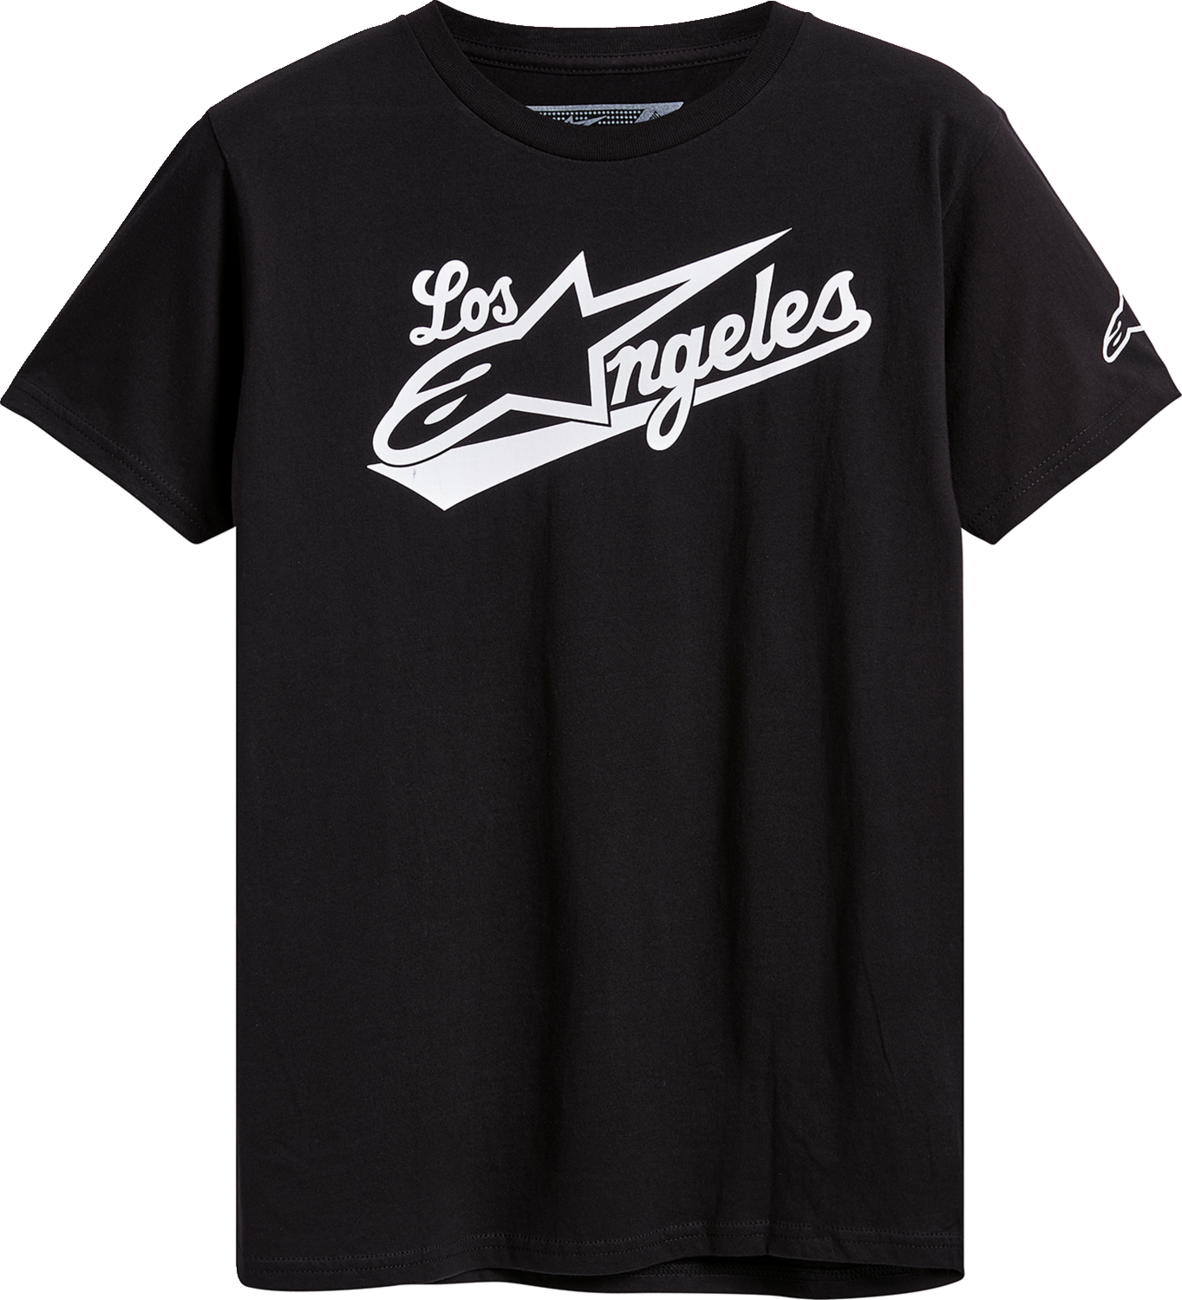 ALPINESTARS Los Angeles T-Shirt - Black - XL 12337222010XL